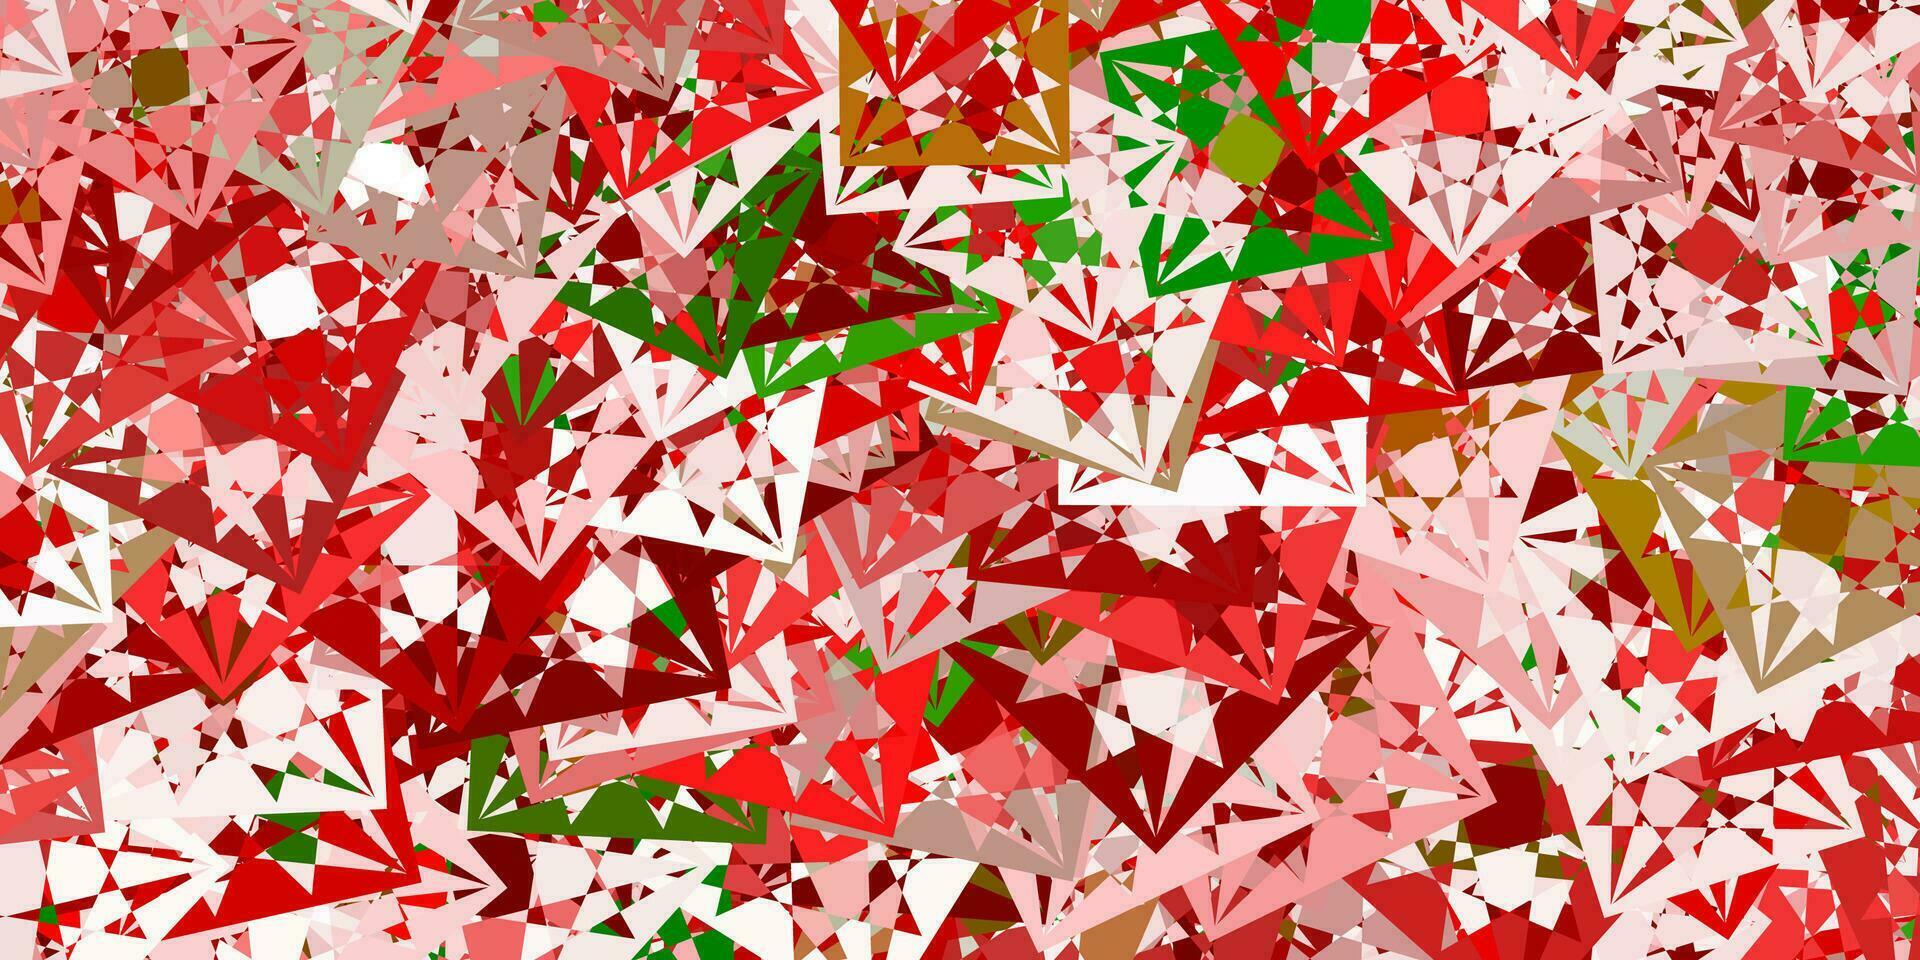 ljusgrön, röd vektorbakgrund med trianglar. vektor